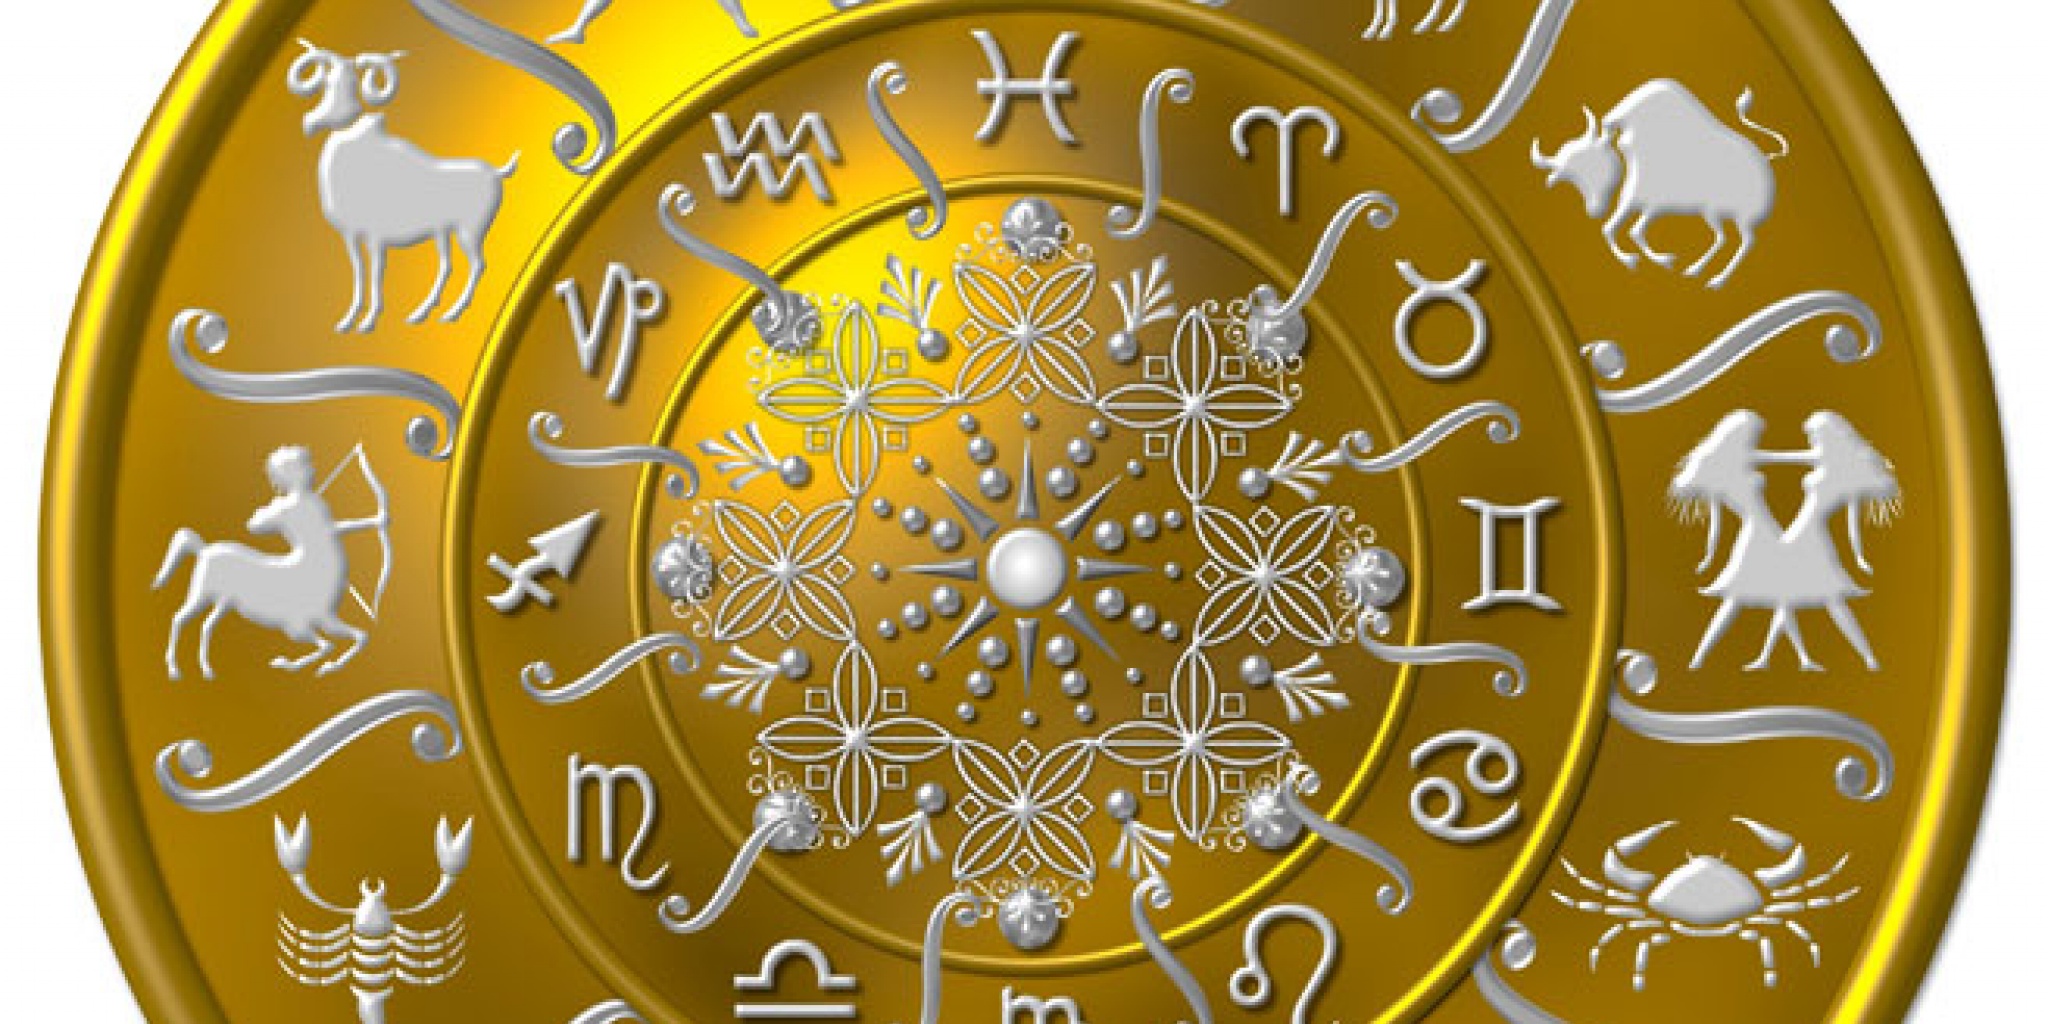 Про зодиаки. Знаки зодиака. Зодиакальный круг. Астрология знаки зодиака.